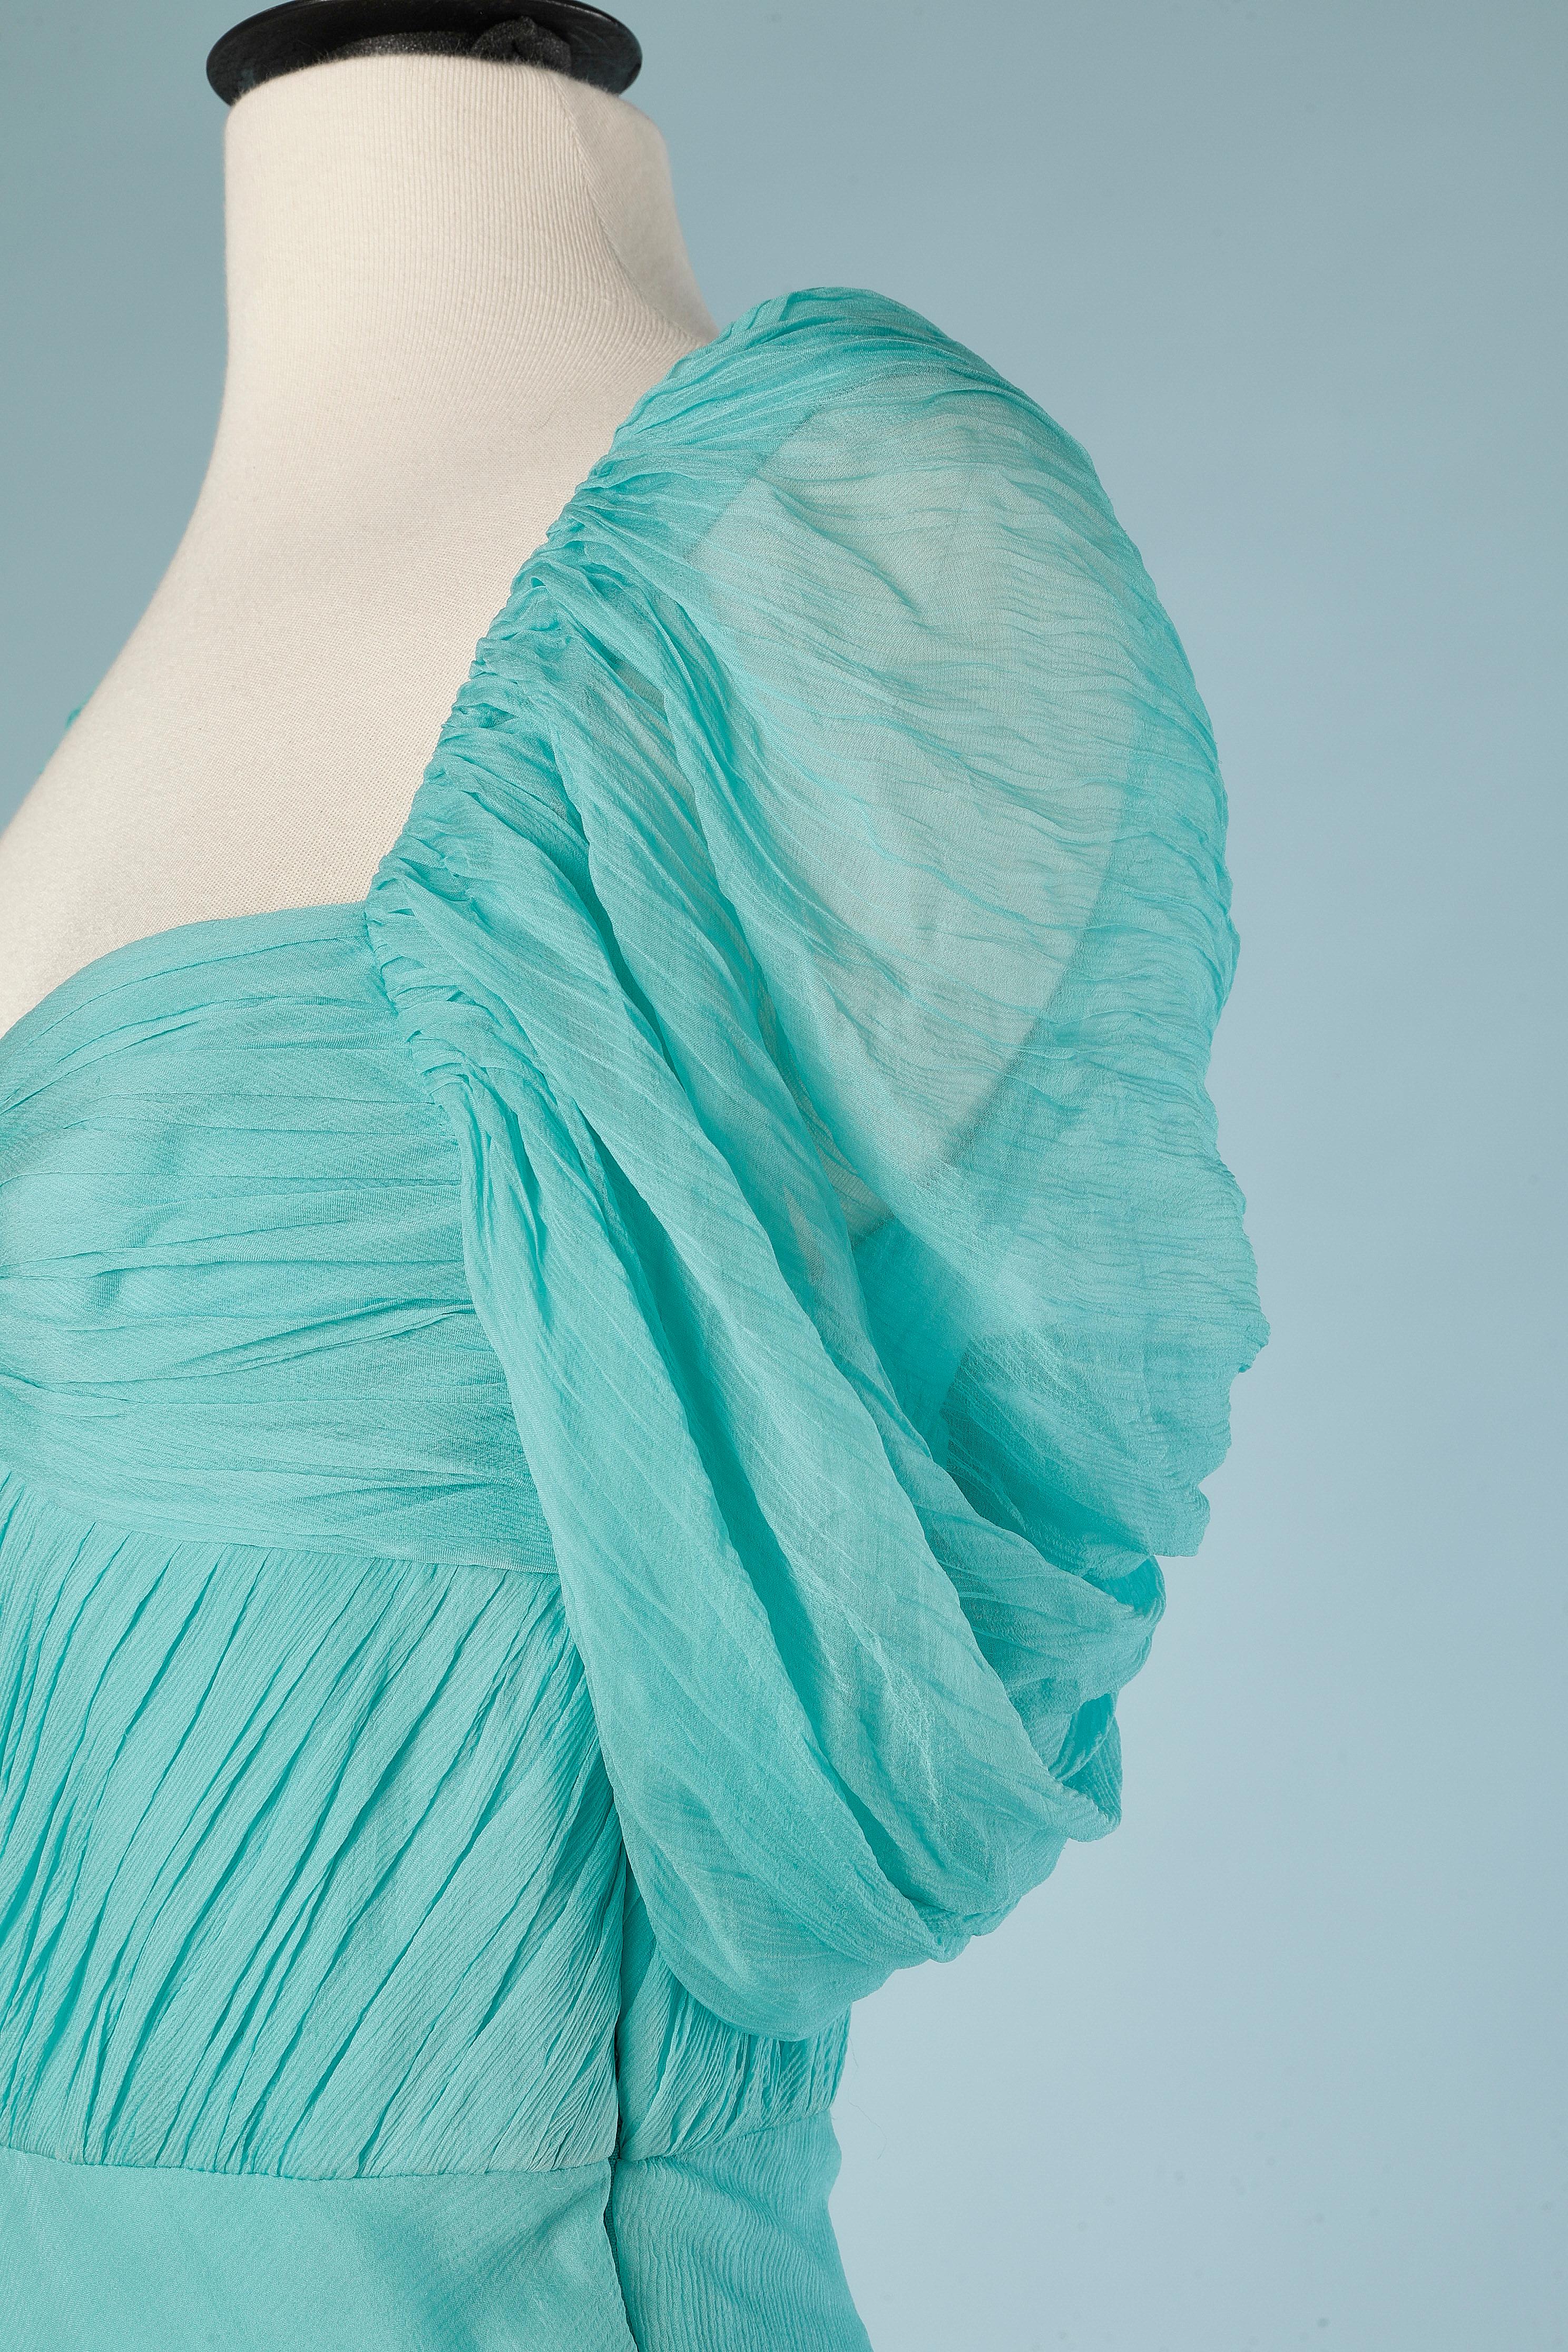 Long asymmetrical drape evening dress in turquoise silk chiffon. Boned. Biais. 
SIZE S